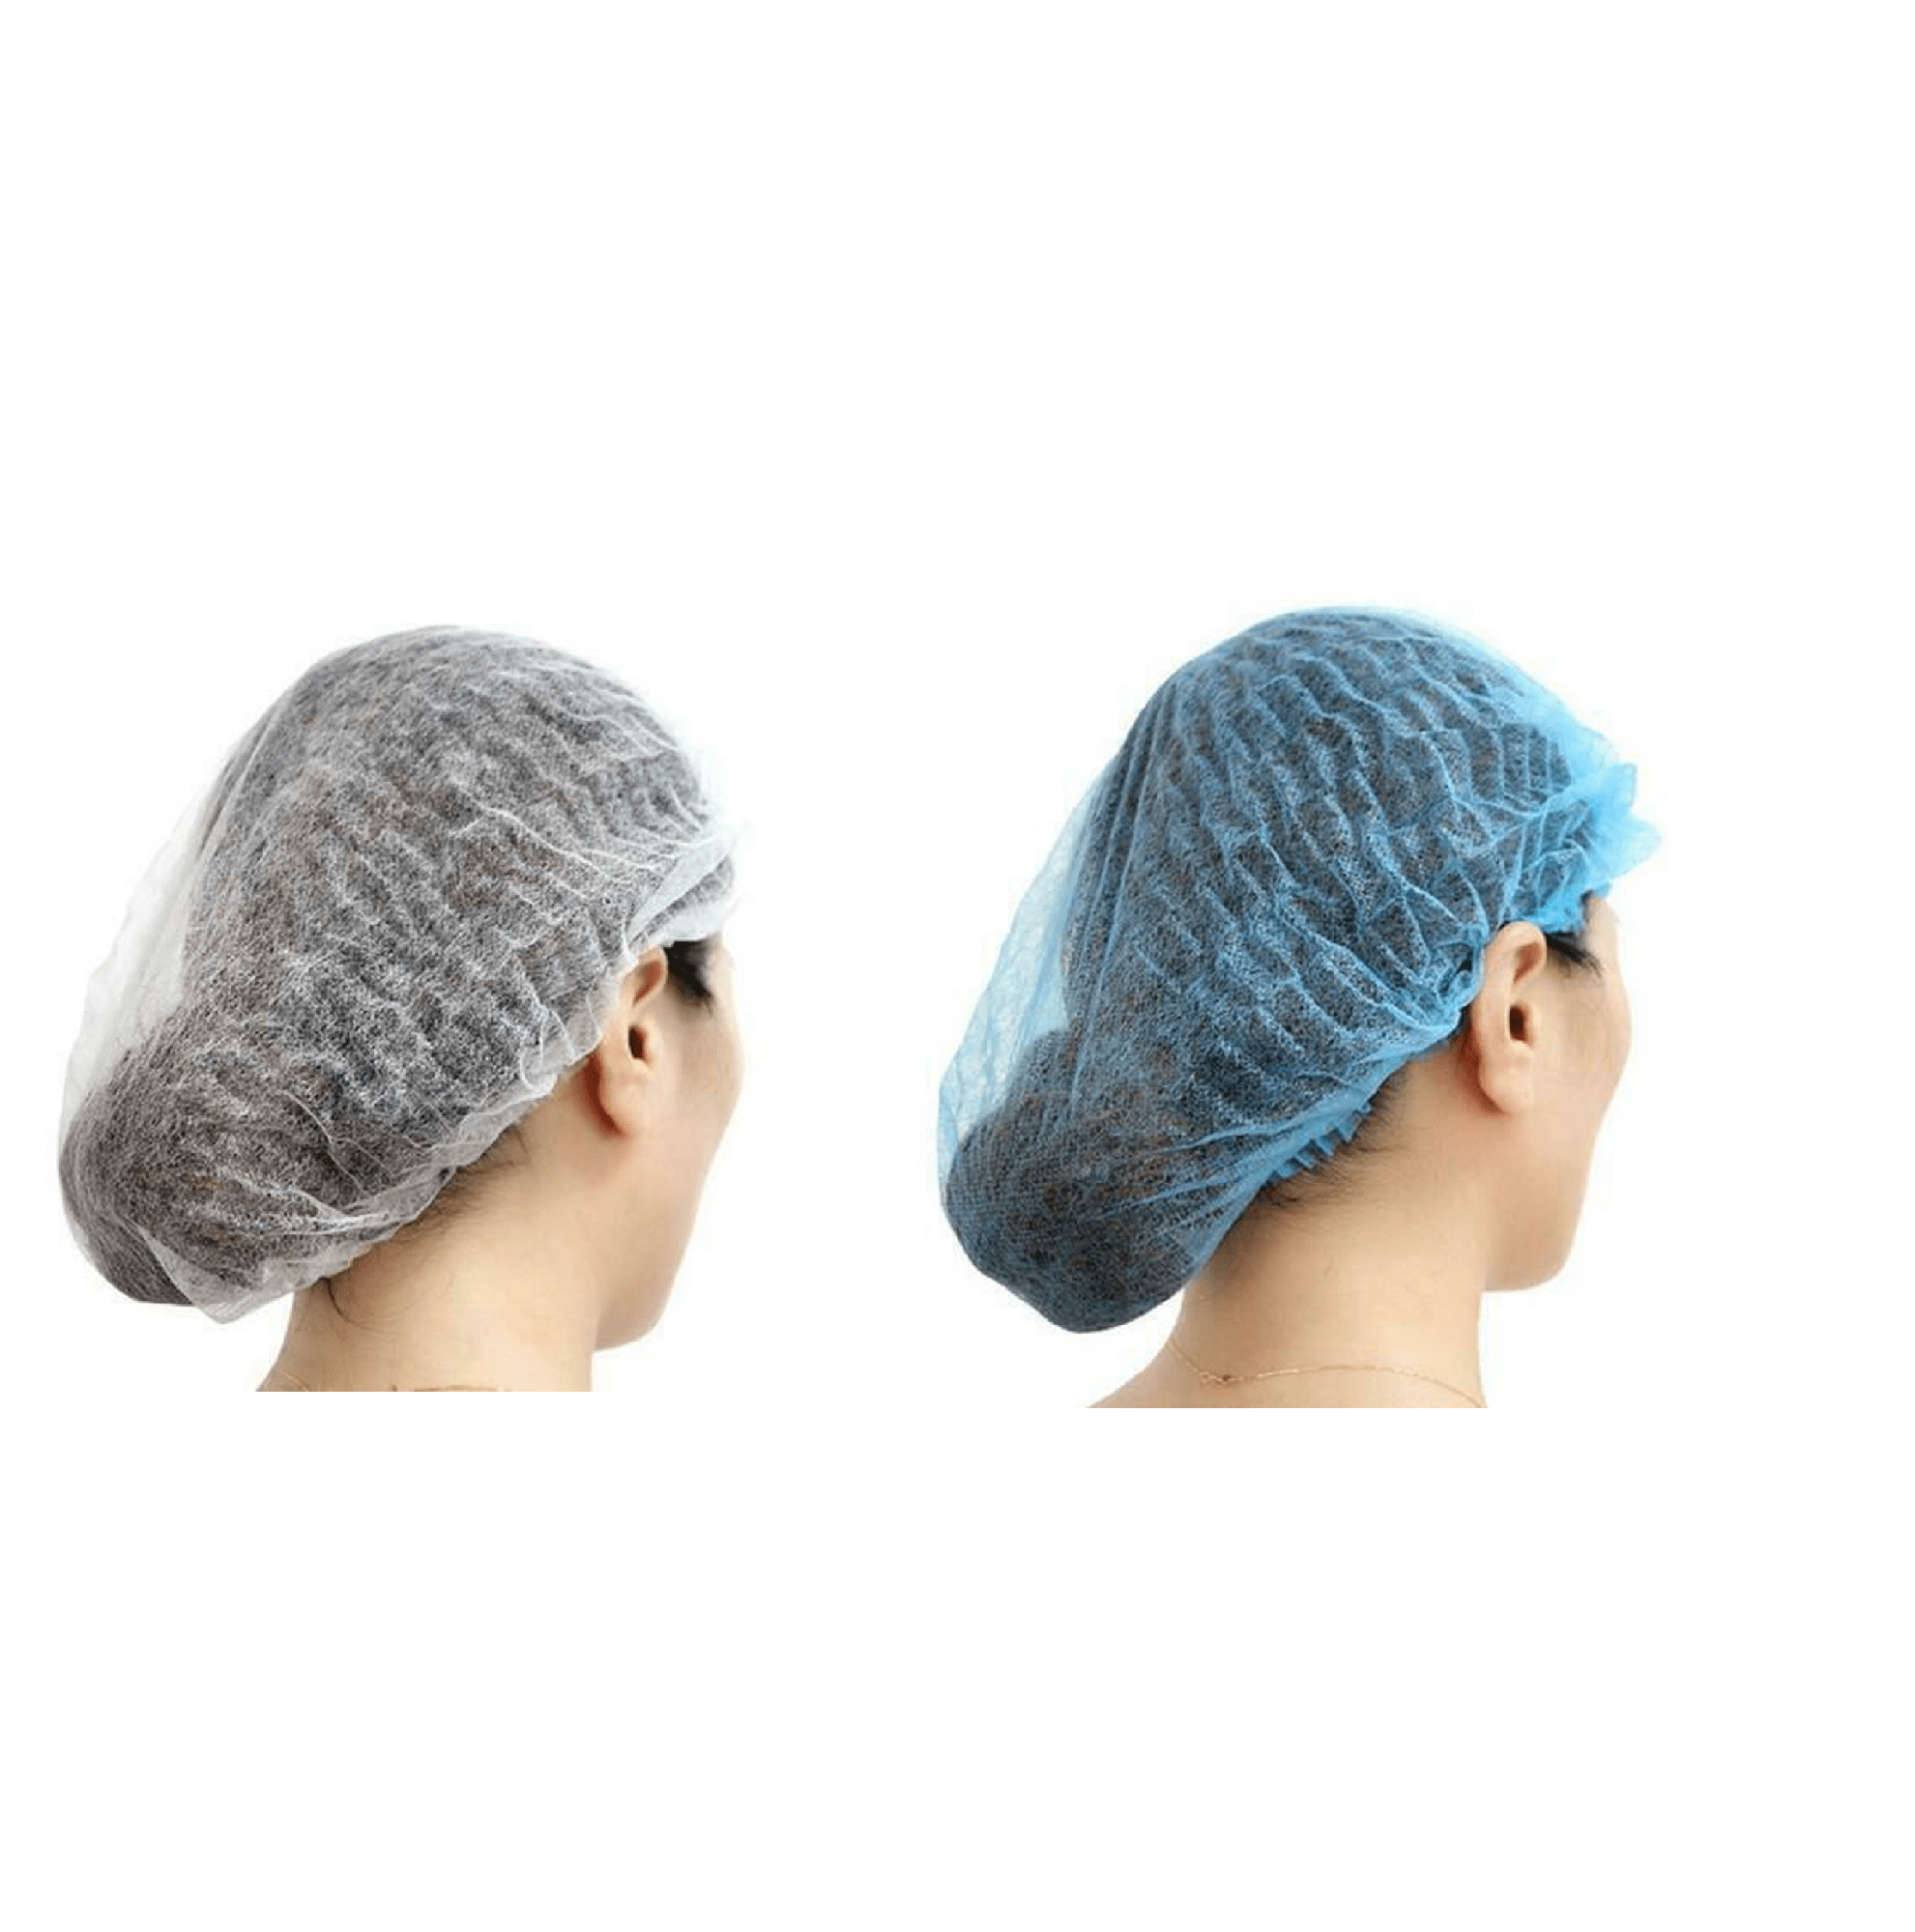 Blue white hair net mob cap